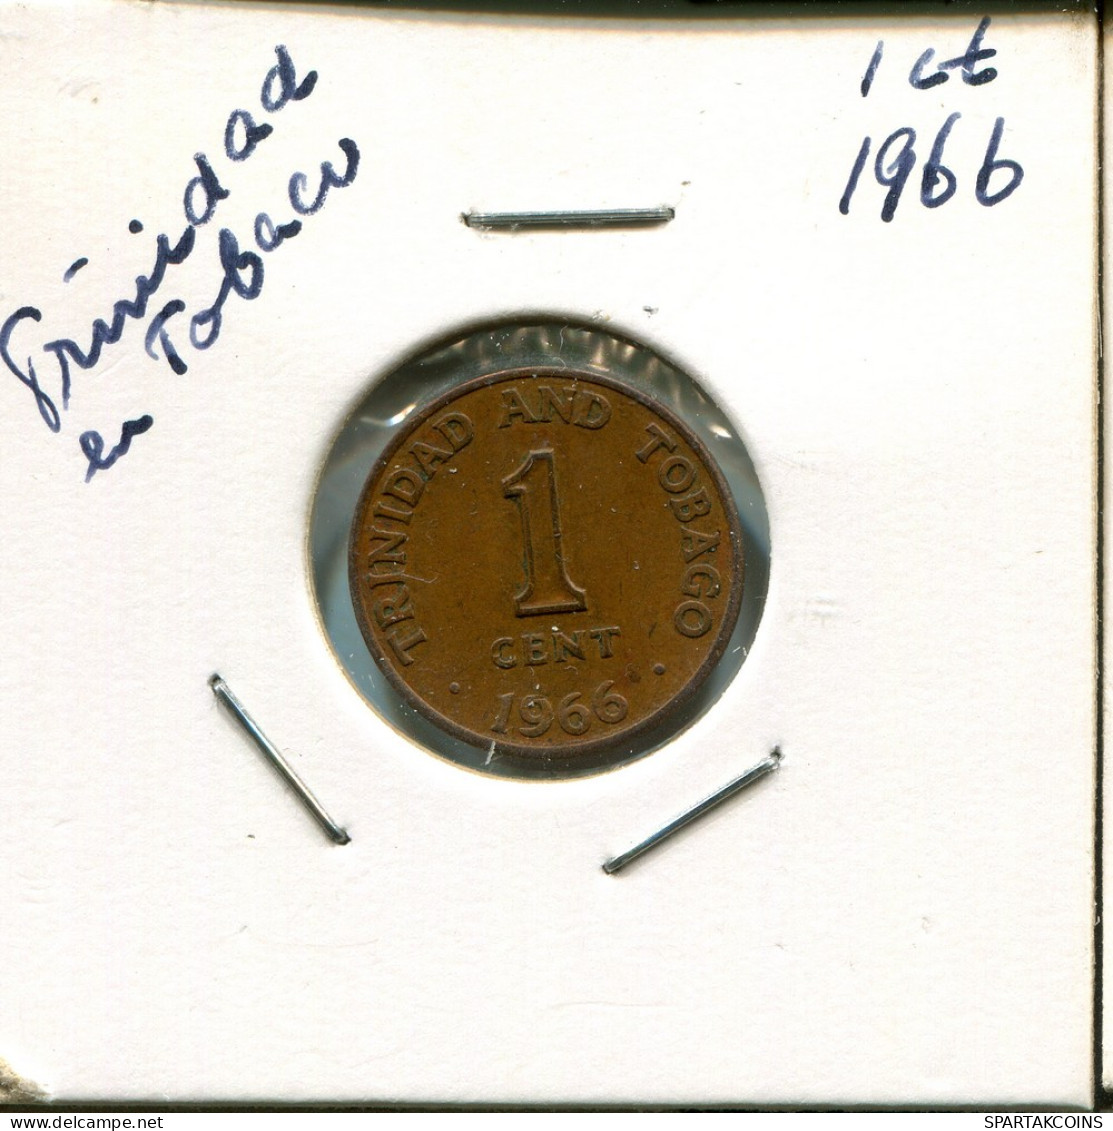 1 CENT 1966 TRINIDAD & TOBAGO Coin #AN684.U - Trinidad & Tobago